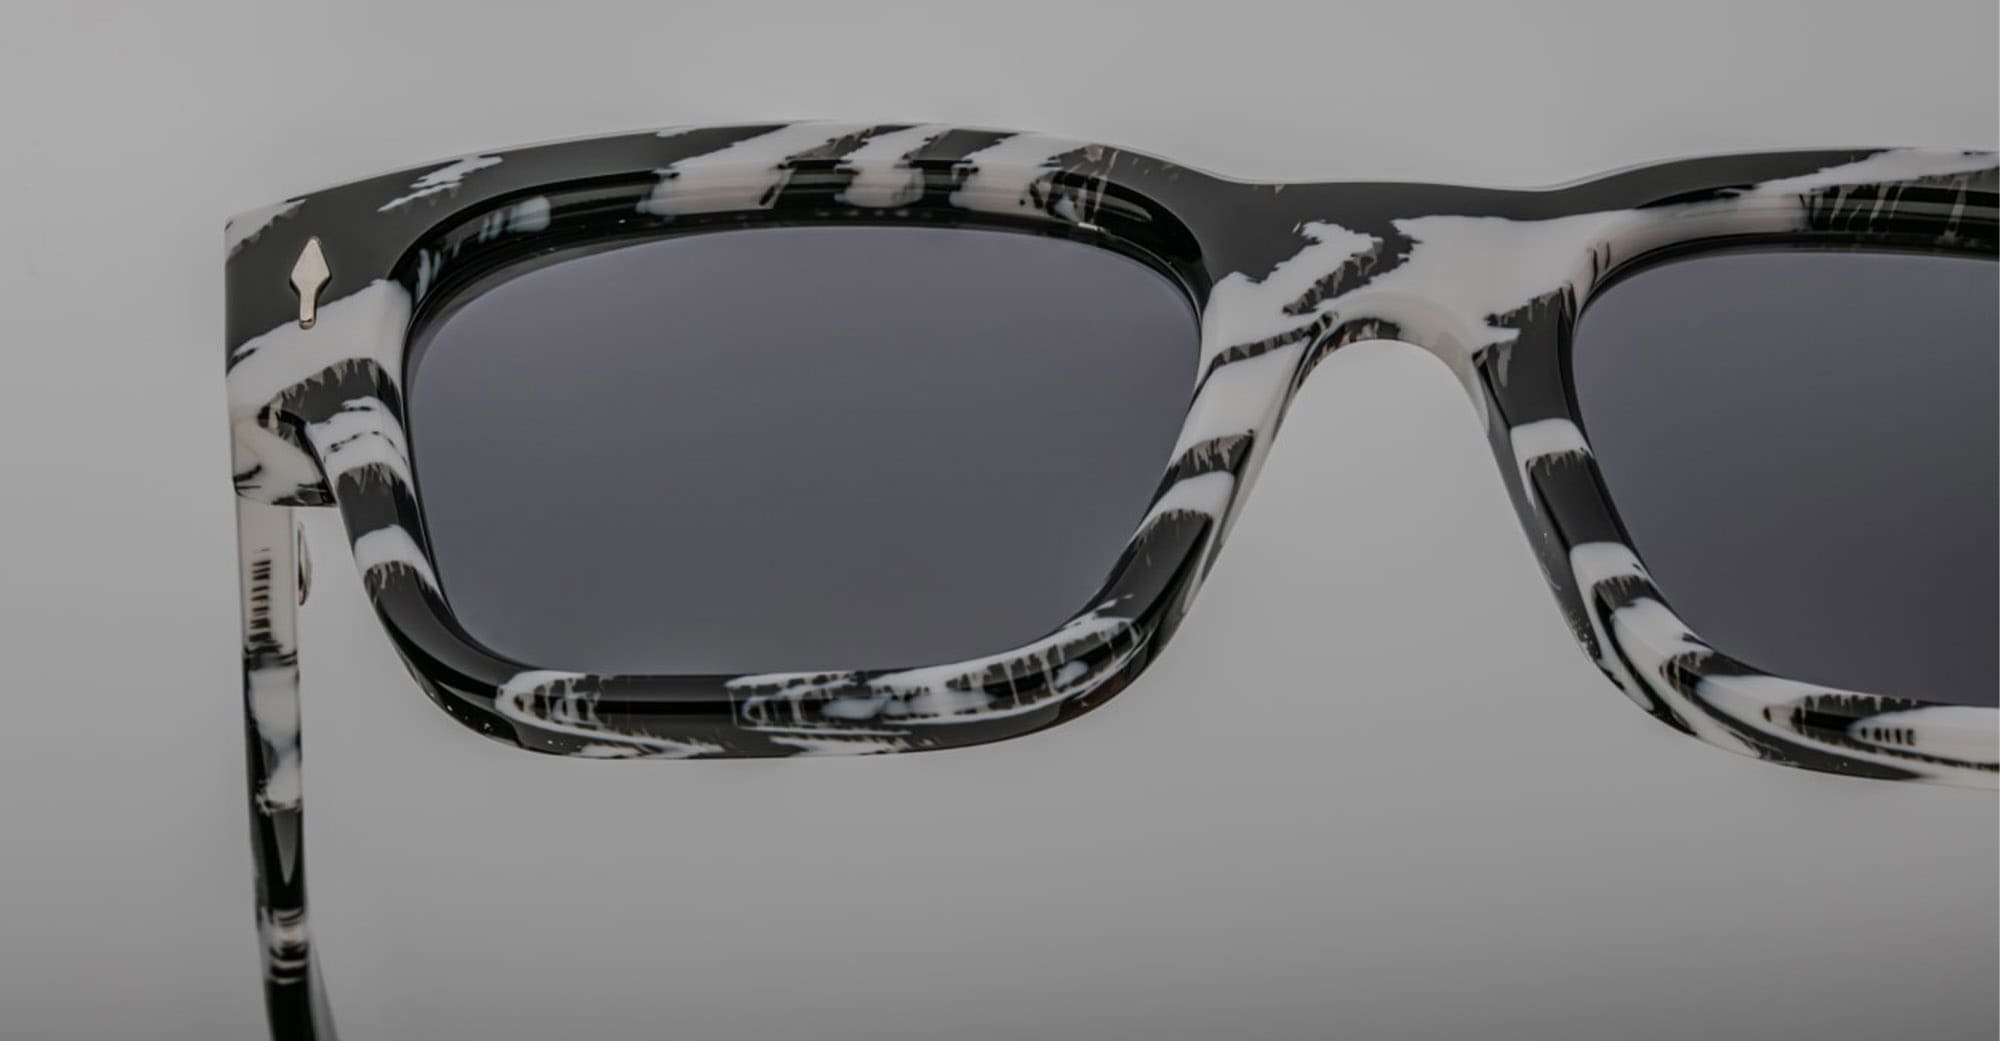 Marble Gray White Charleston Sunglasses